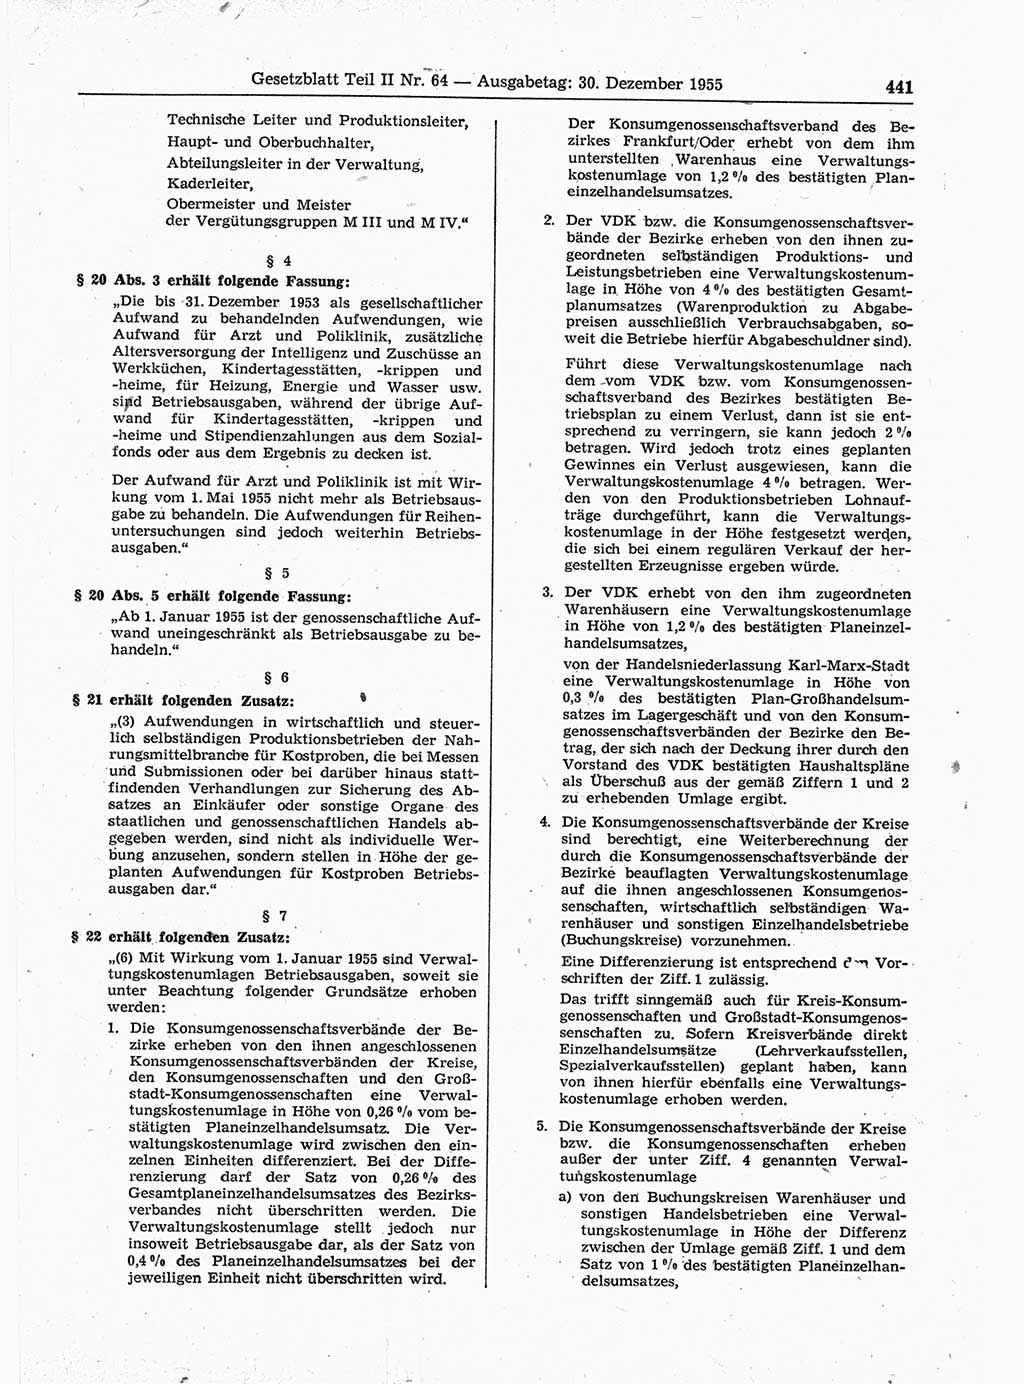 Gesetzblatt (GBl.) der Deutschen Demokratischen Republik (DDR) Teil ⅠⅠ 1955, Seite 441 (GBl. DDR ⅠⅠ 1955, S. 441)